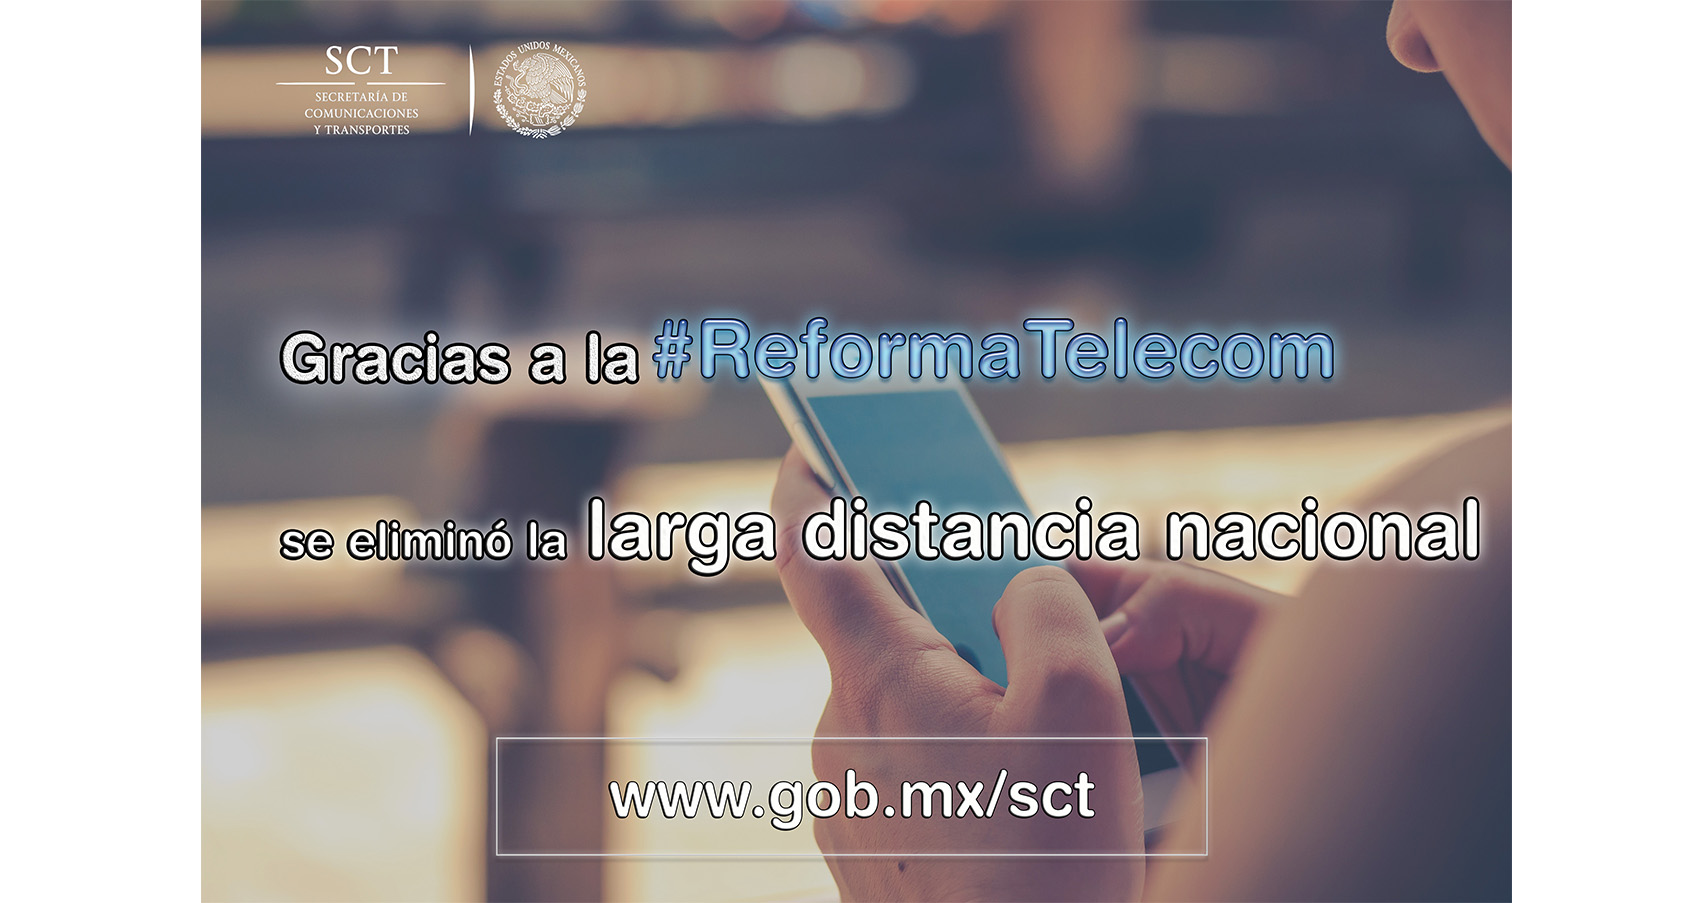 La eliminación del cobro de la larga distancia nacional es sólo uno de los muchos beneficios de la #ReformaTelecom.